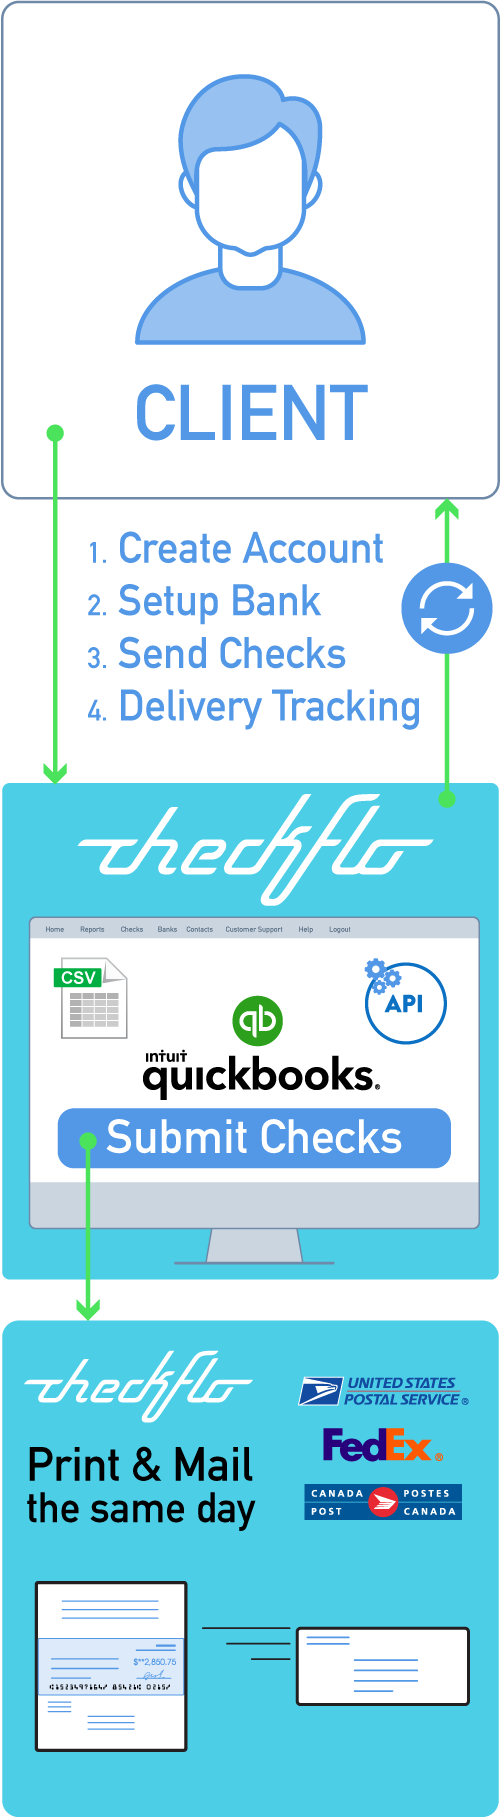 Checkflo Sign up and Setup Account Process